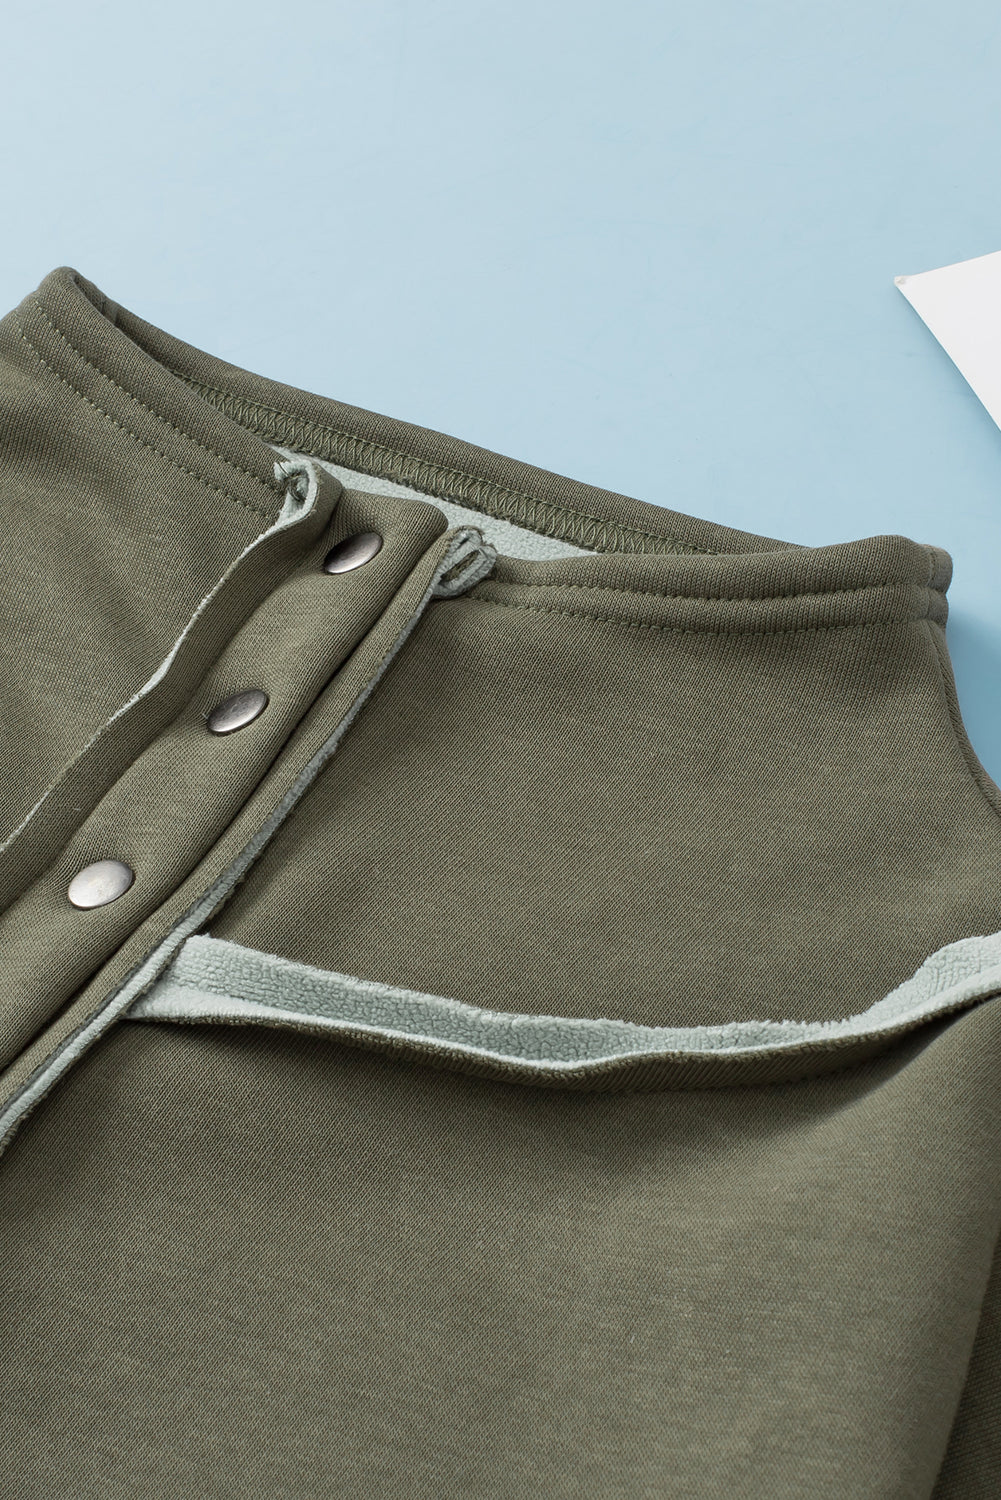 Green Fleece Exposed Seam Buttoned Neckline Sweatshirt